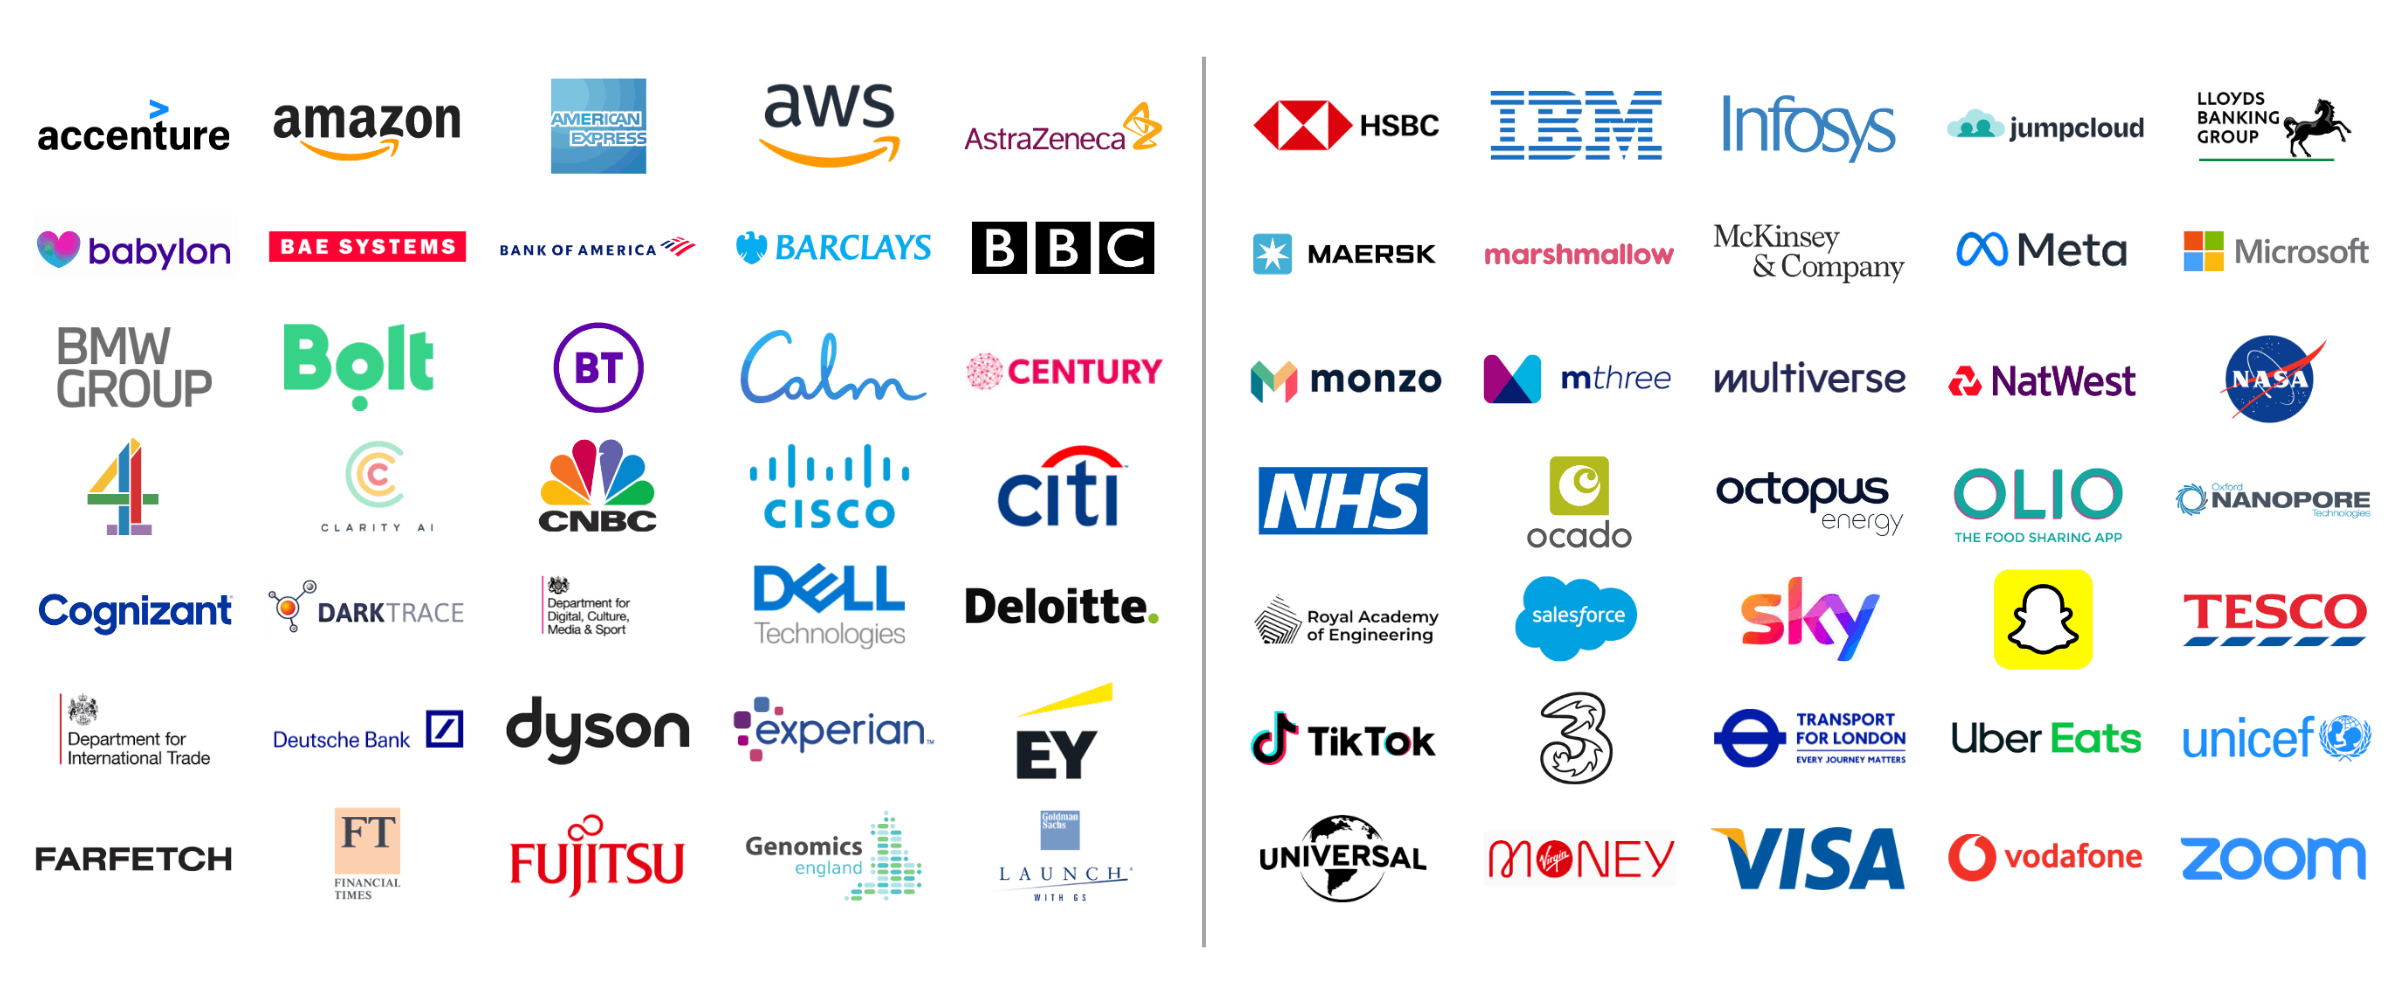 Who attends london tech week in logos